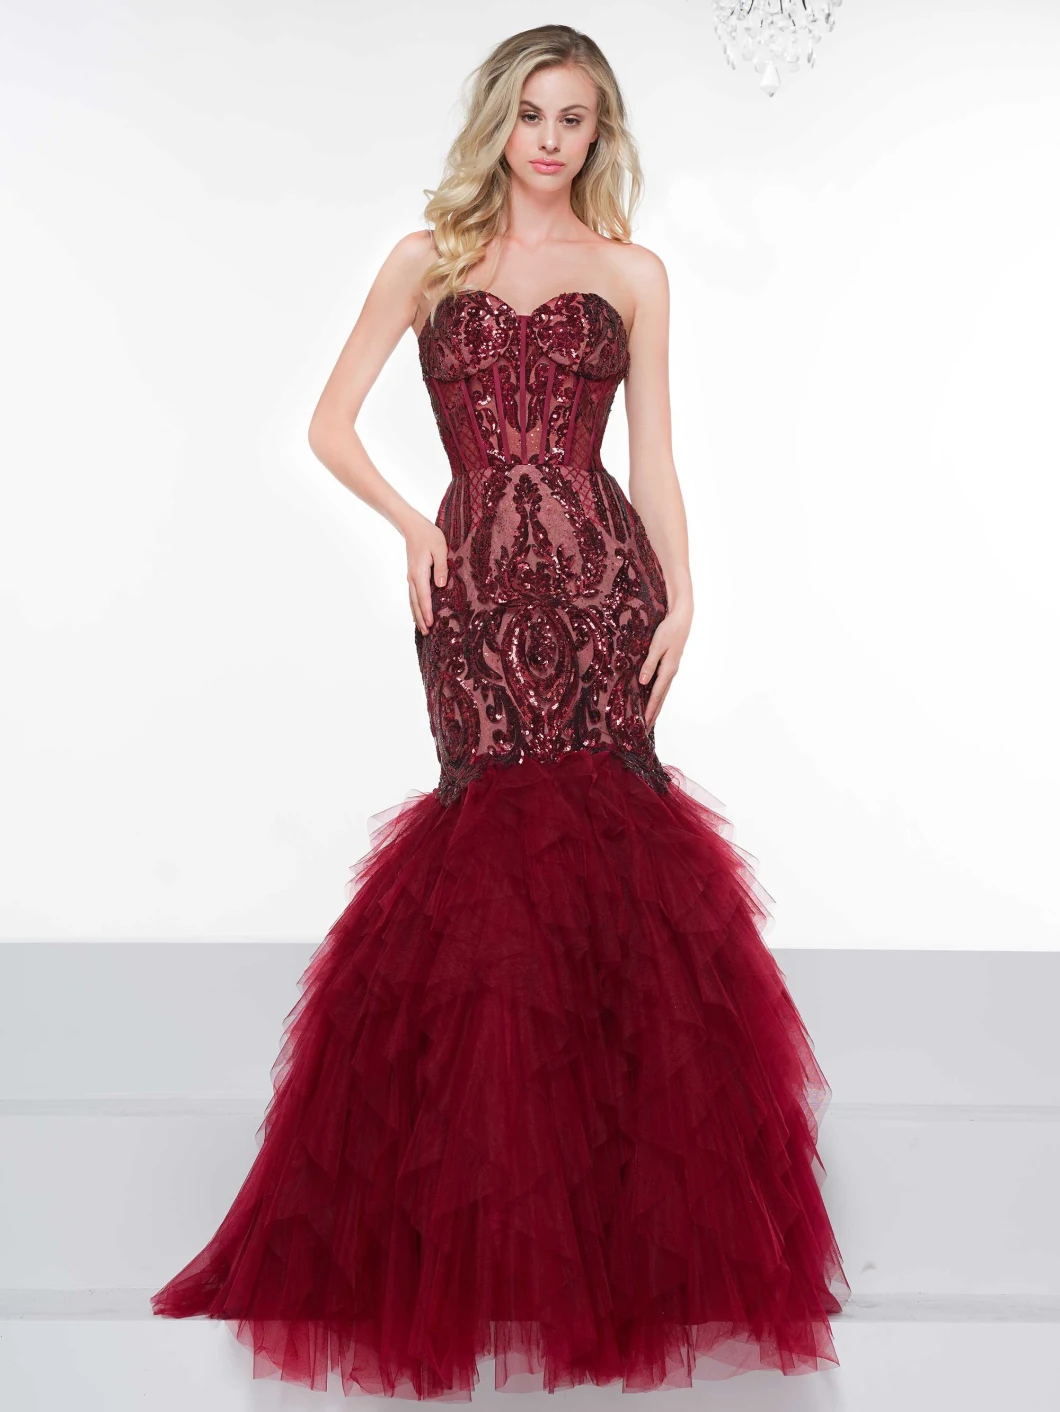 Fashion Lace Bodice Bridal Prom Dress Burgundy Tull Mermaid Lace Beading Evening Dress